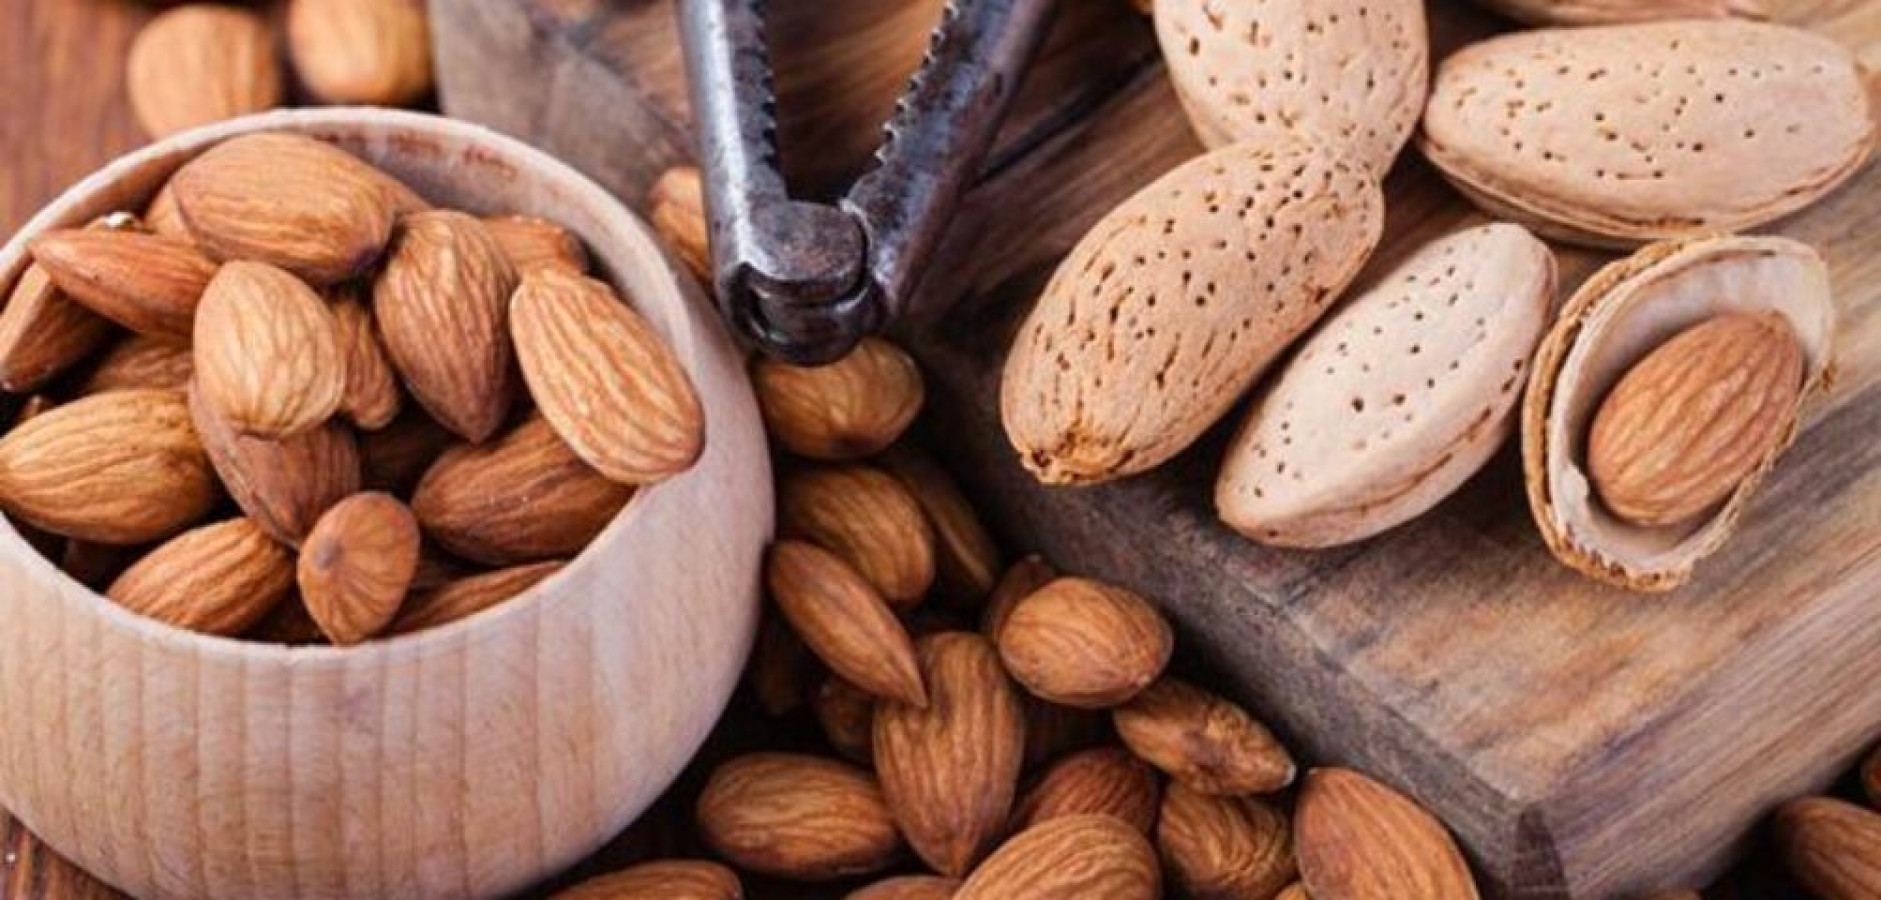 Image Manfaat Kacang Almond untuk Kesehatan Secara Umum